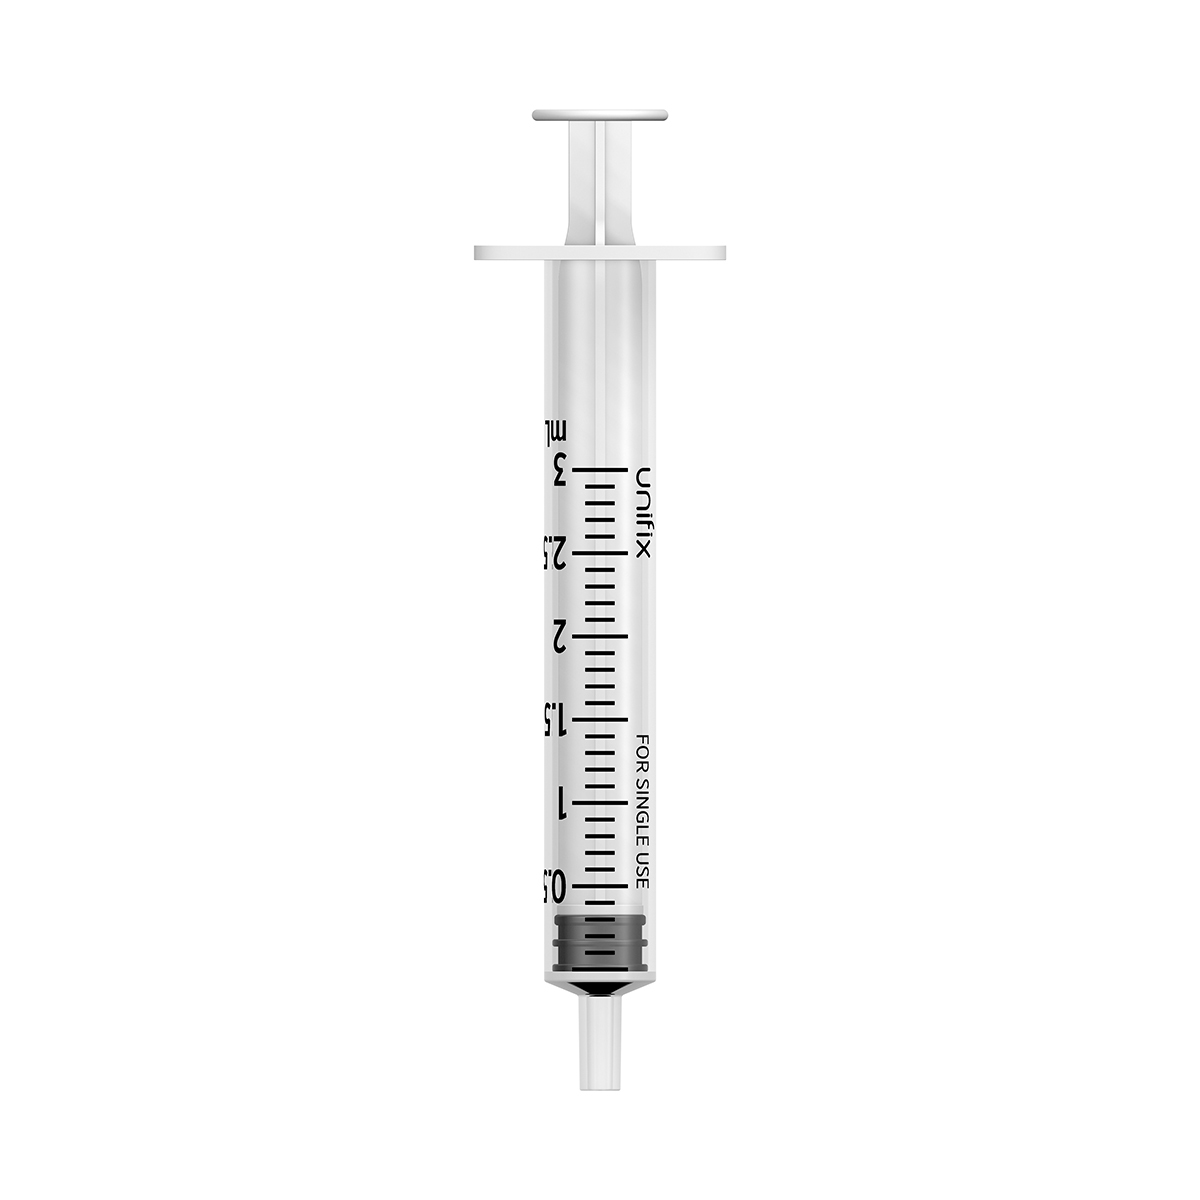 Unifix 3ml luer slip syringe